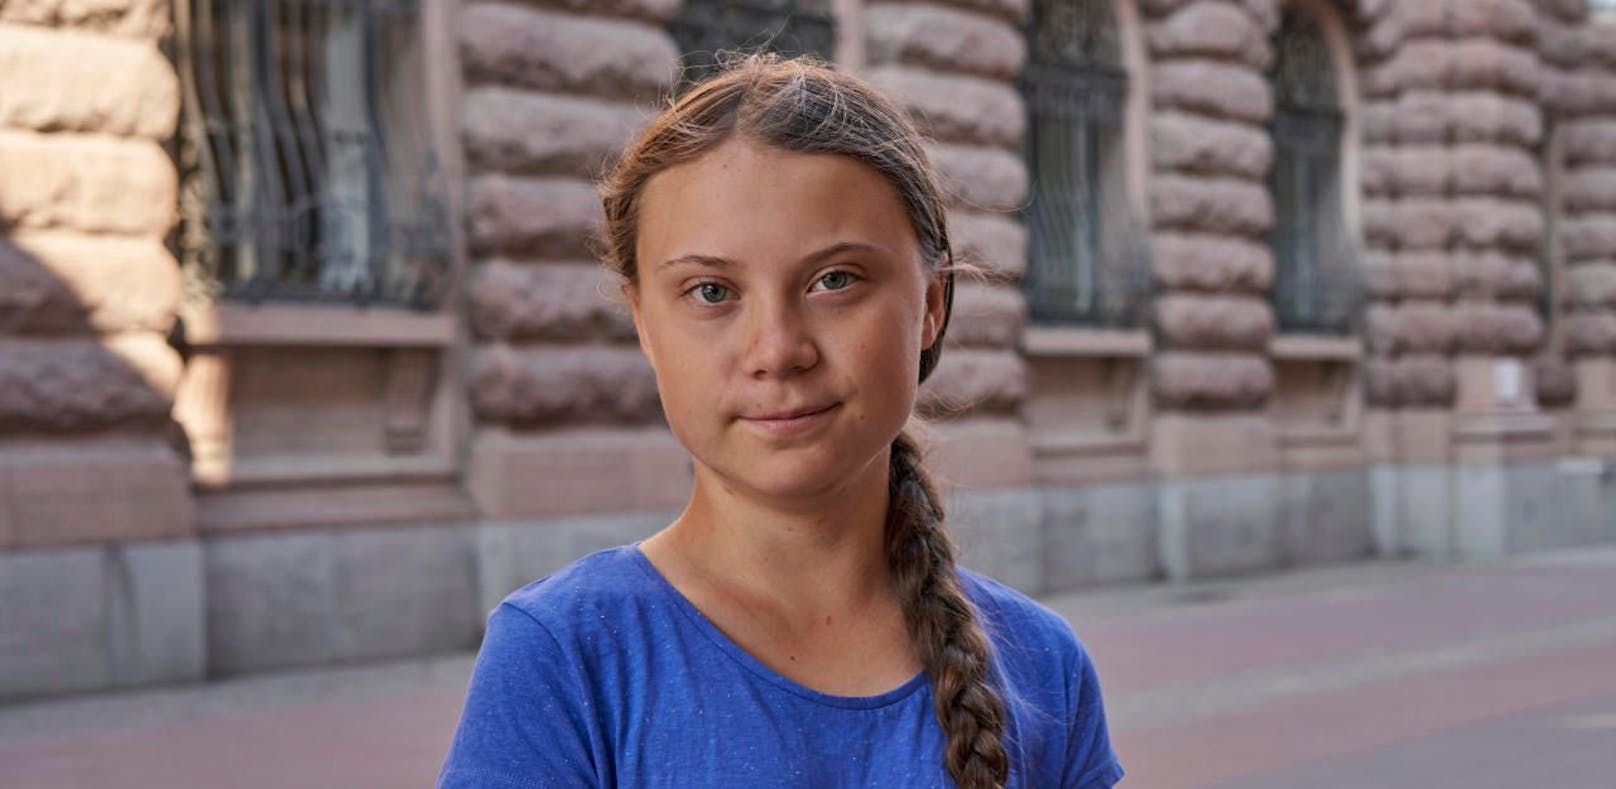 Greta Thunberg warnt vor "falschen Gretas"